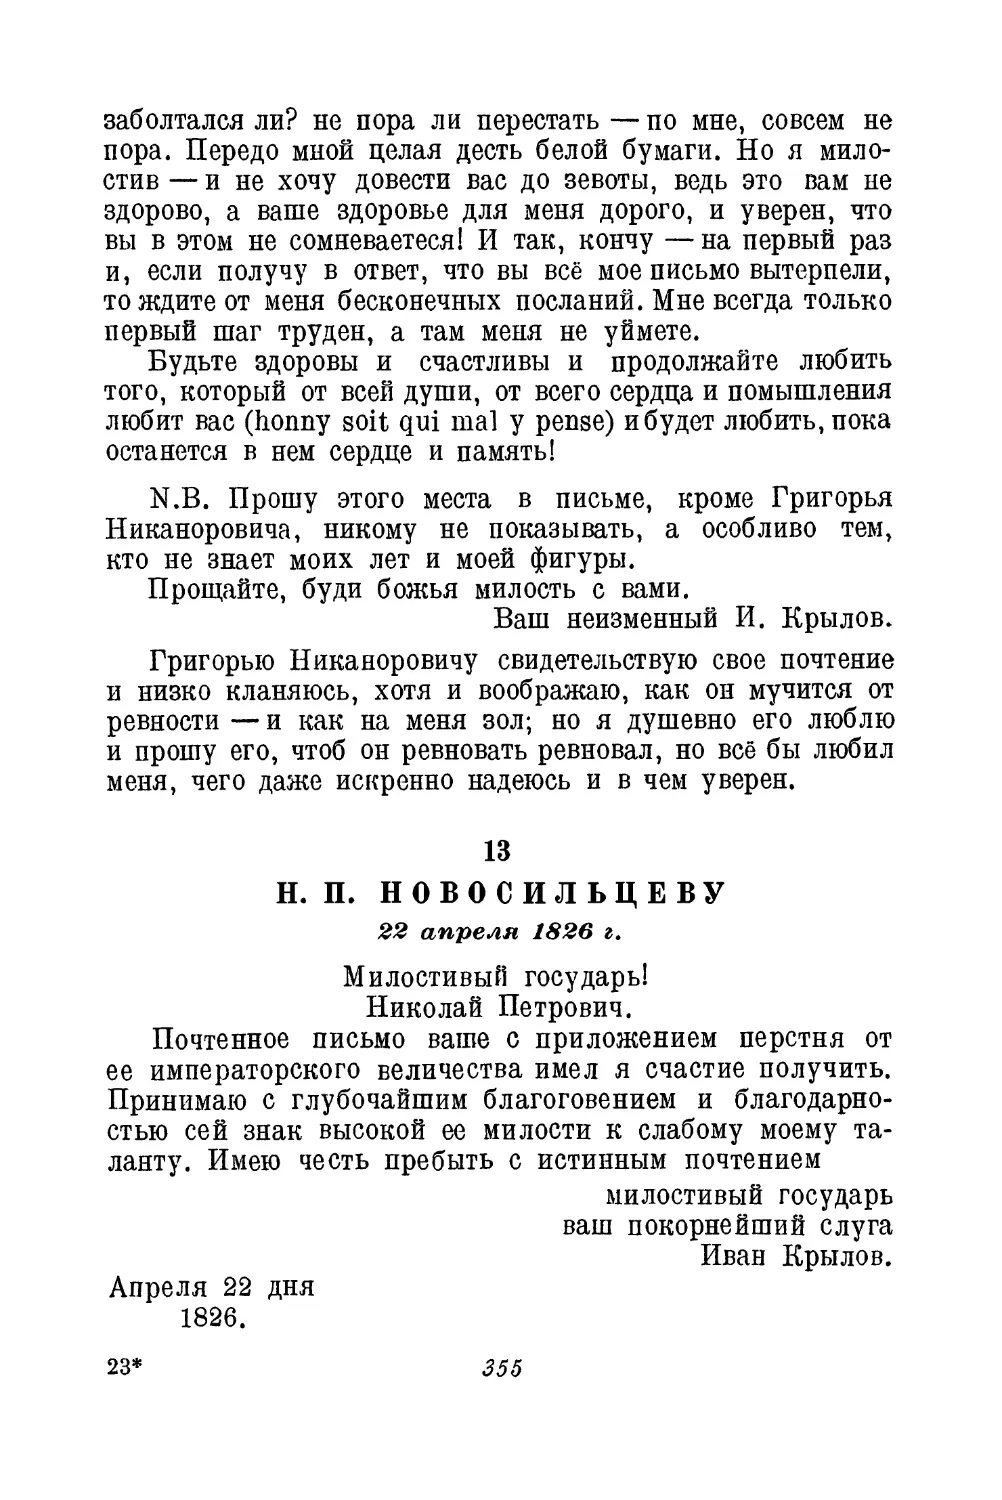 13. Н. П. Новосильцеву. 22 апреля 1826 г.